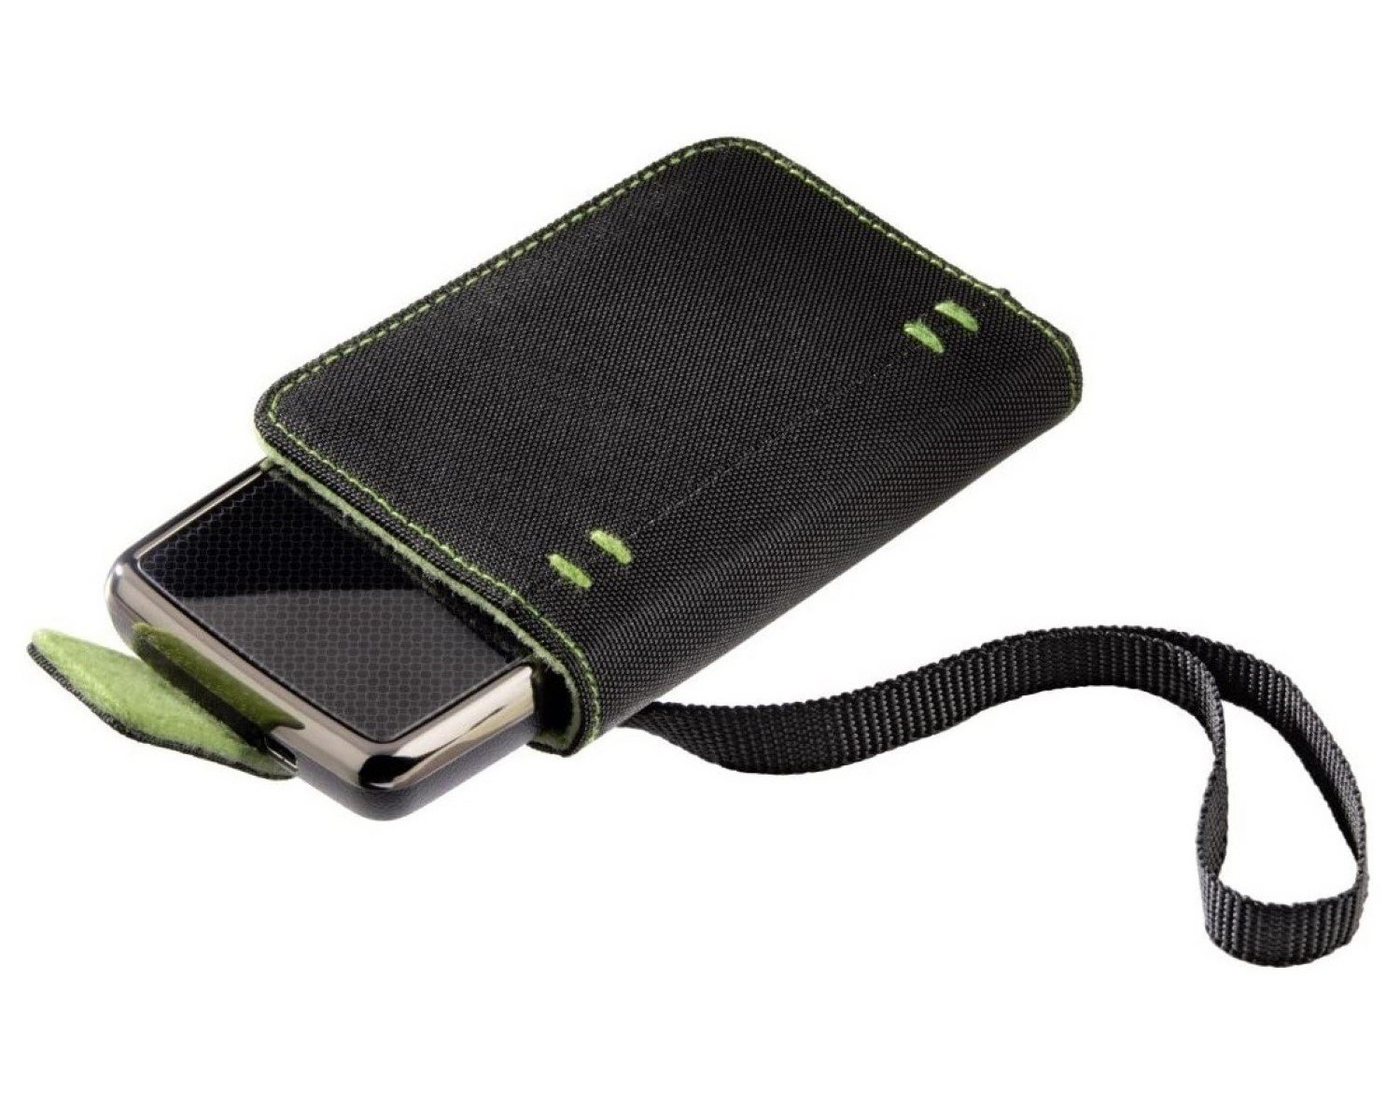 Hama Festplattentasche Tasche 1,8" Case Schutz-Hülle Cover Grün, Nylon-Tragebeutel für 1,8-Zoll externe HDD mit Tragegurt von Hama